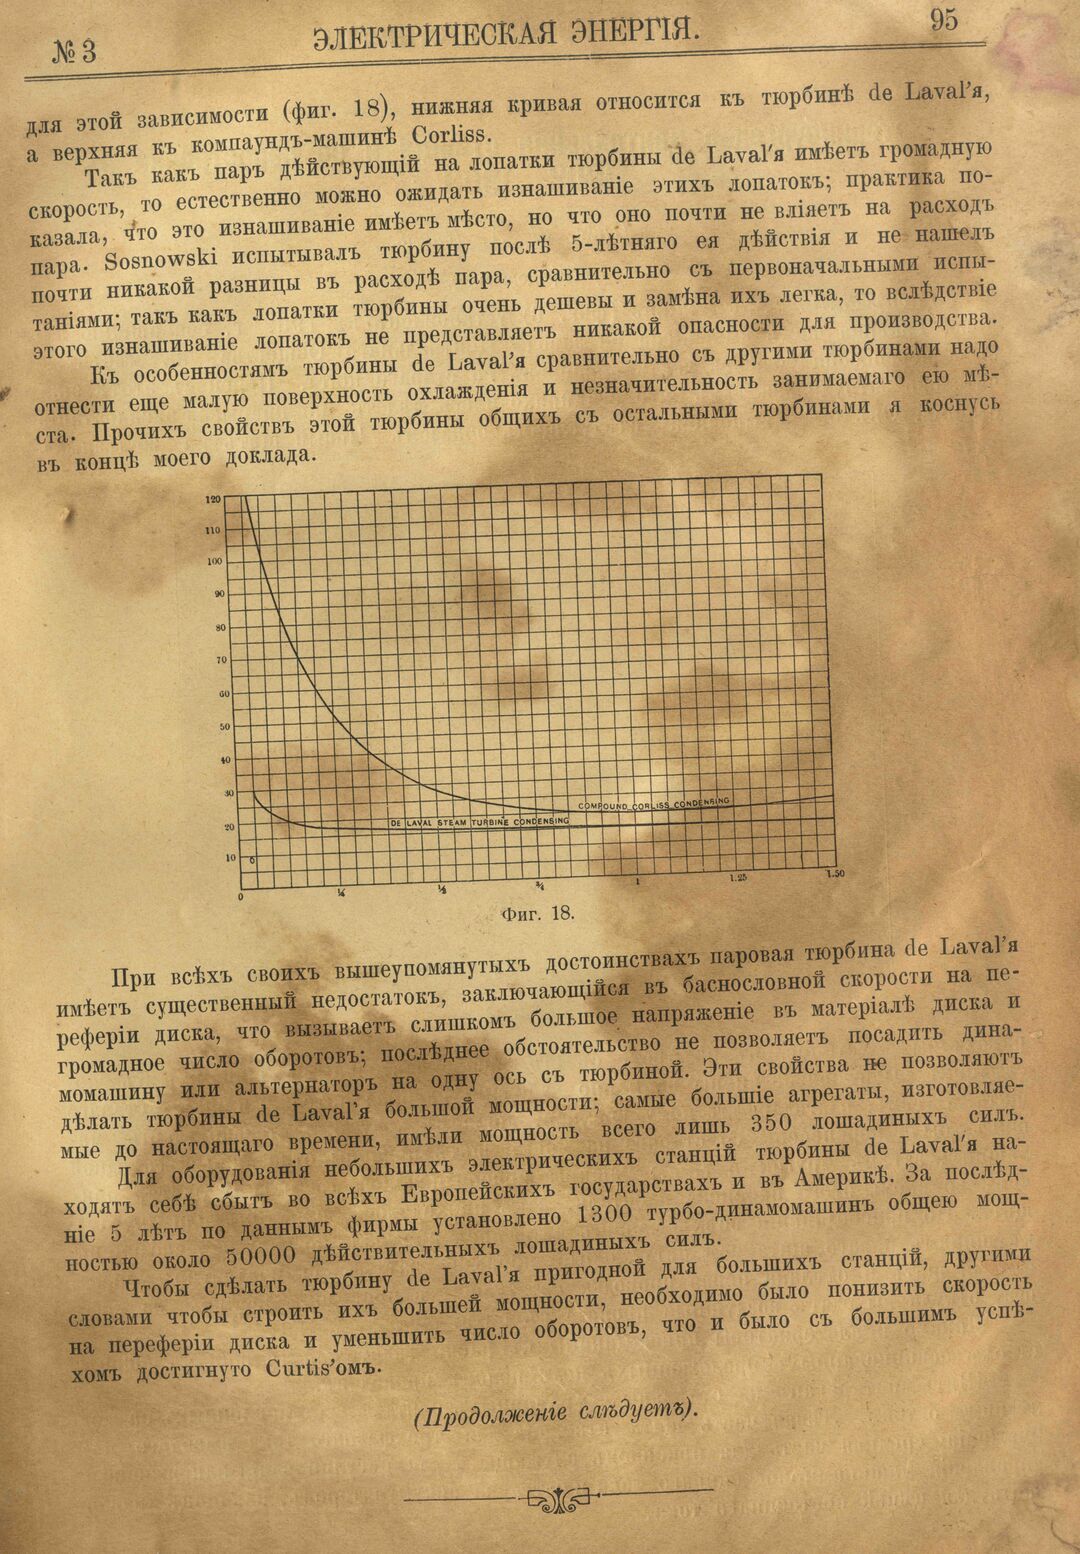 Рис. 1. Журнал Электрическая Энергiя, 3 номер, март, 1904 года, страница 95